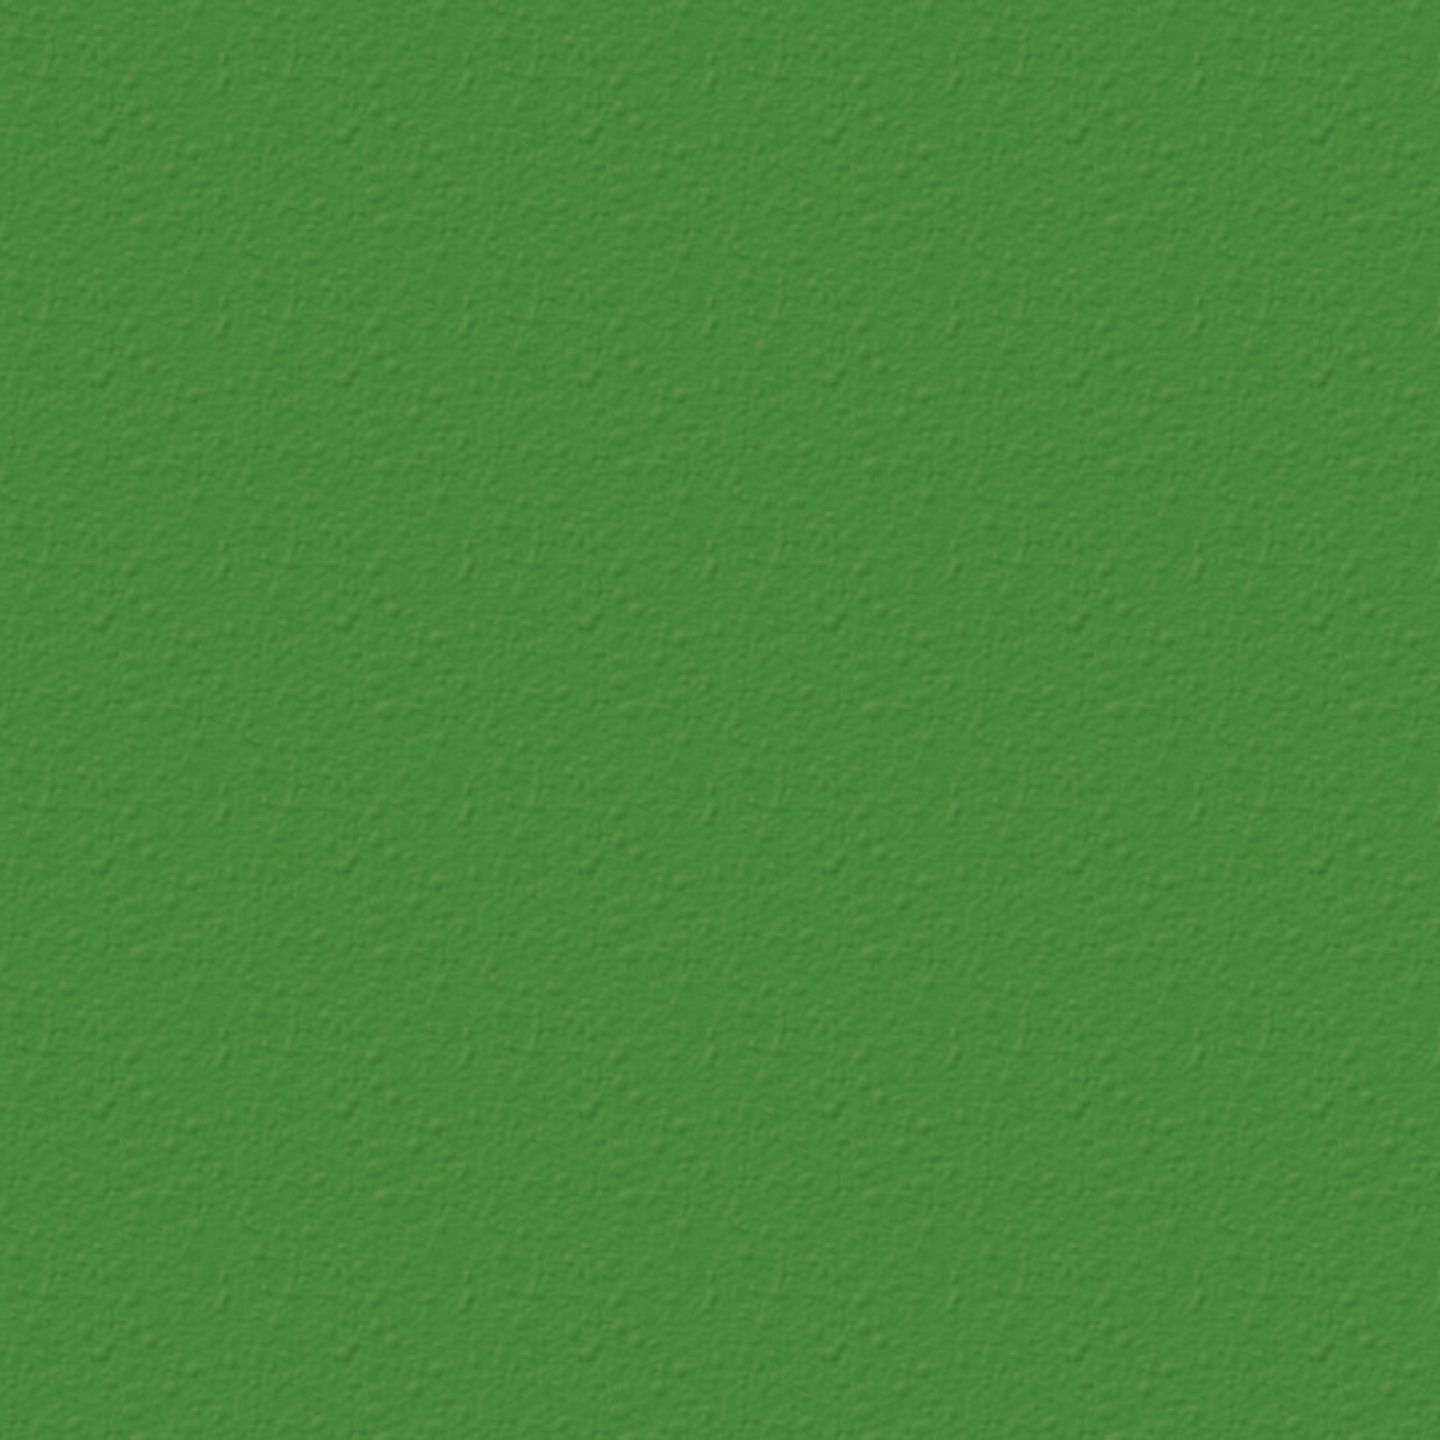 turfgreen